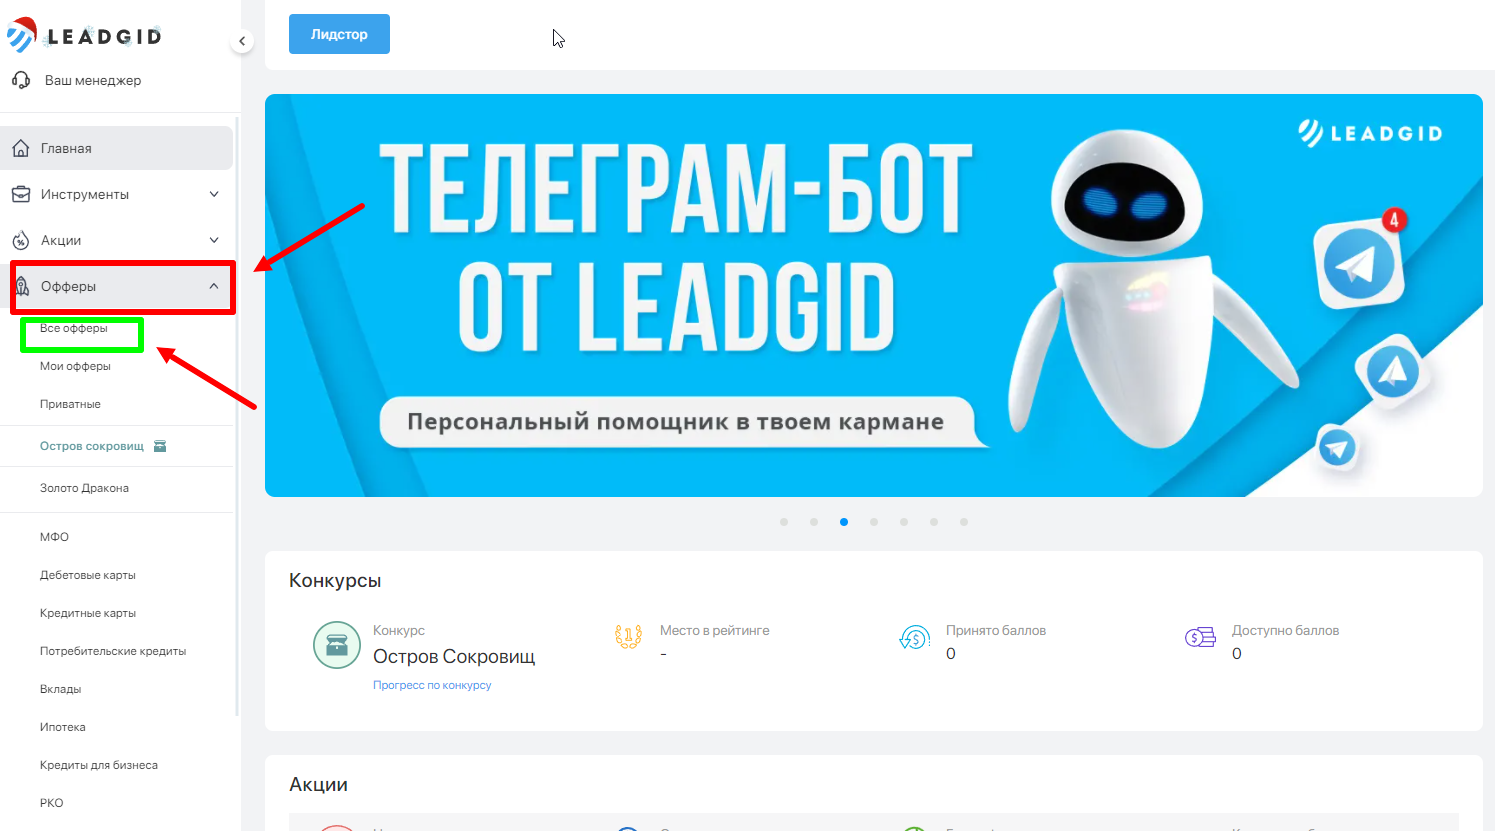 Телеграмм заработок без вложений на русском с выводом денег фото 89